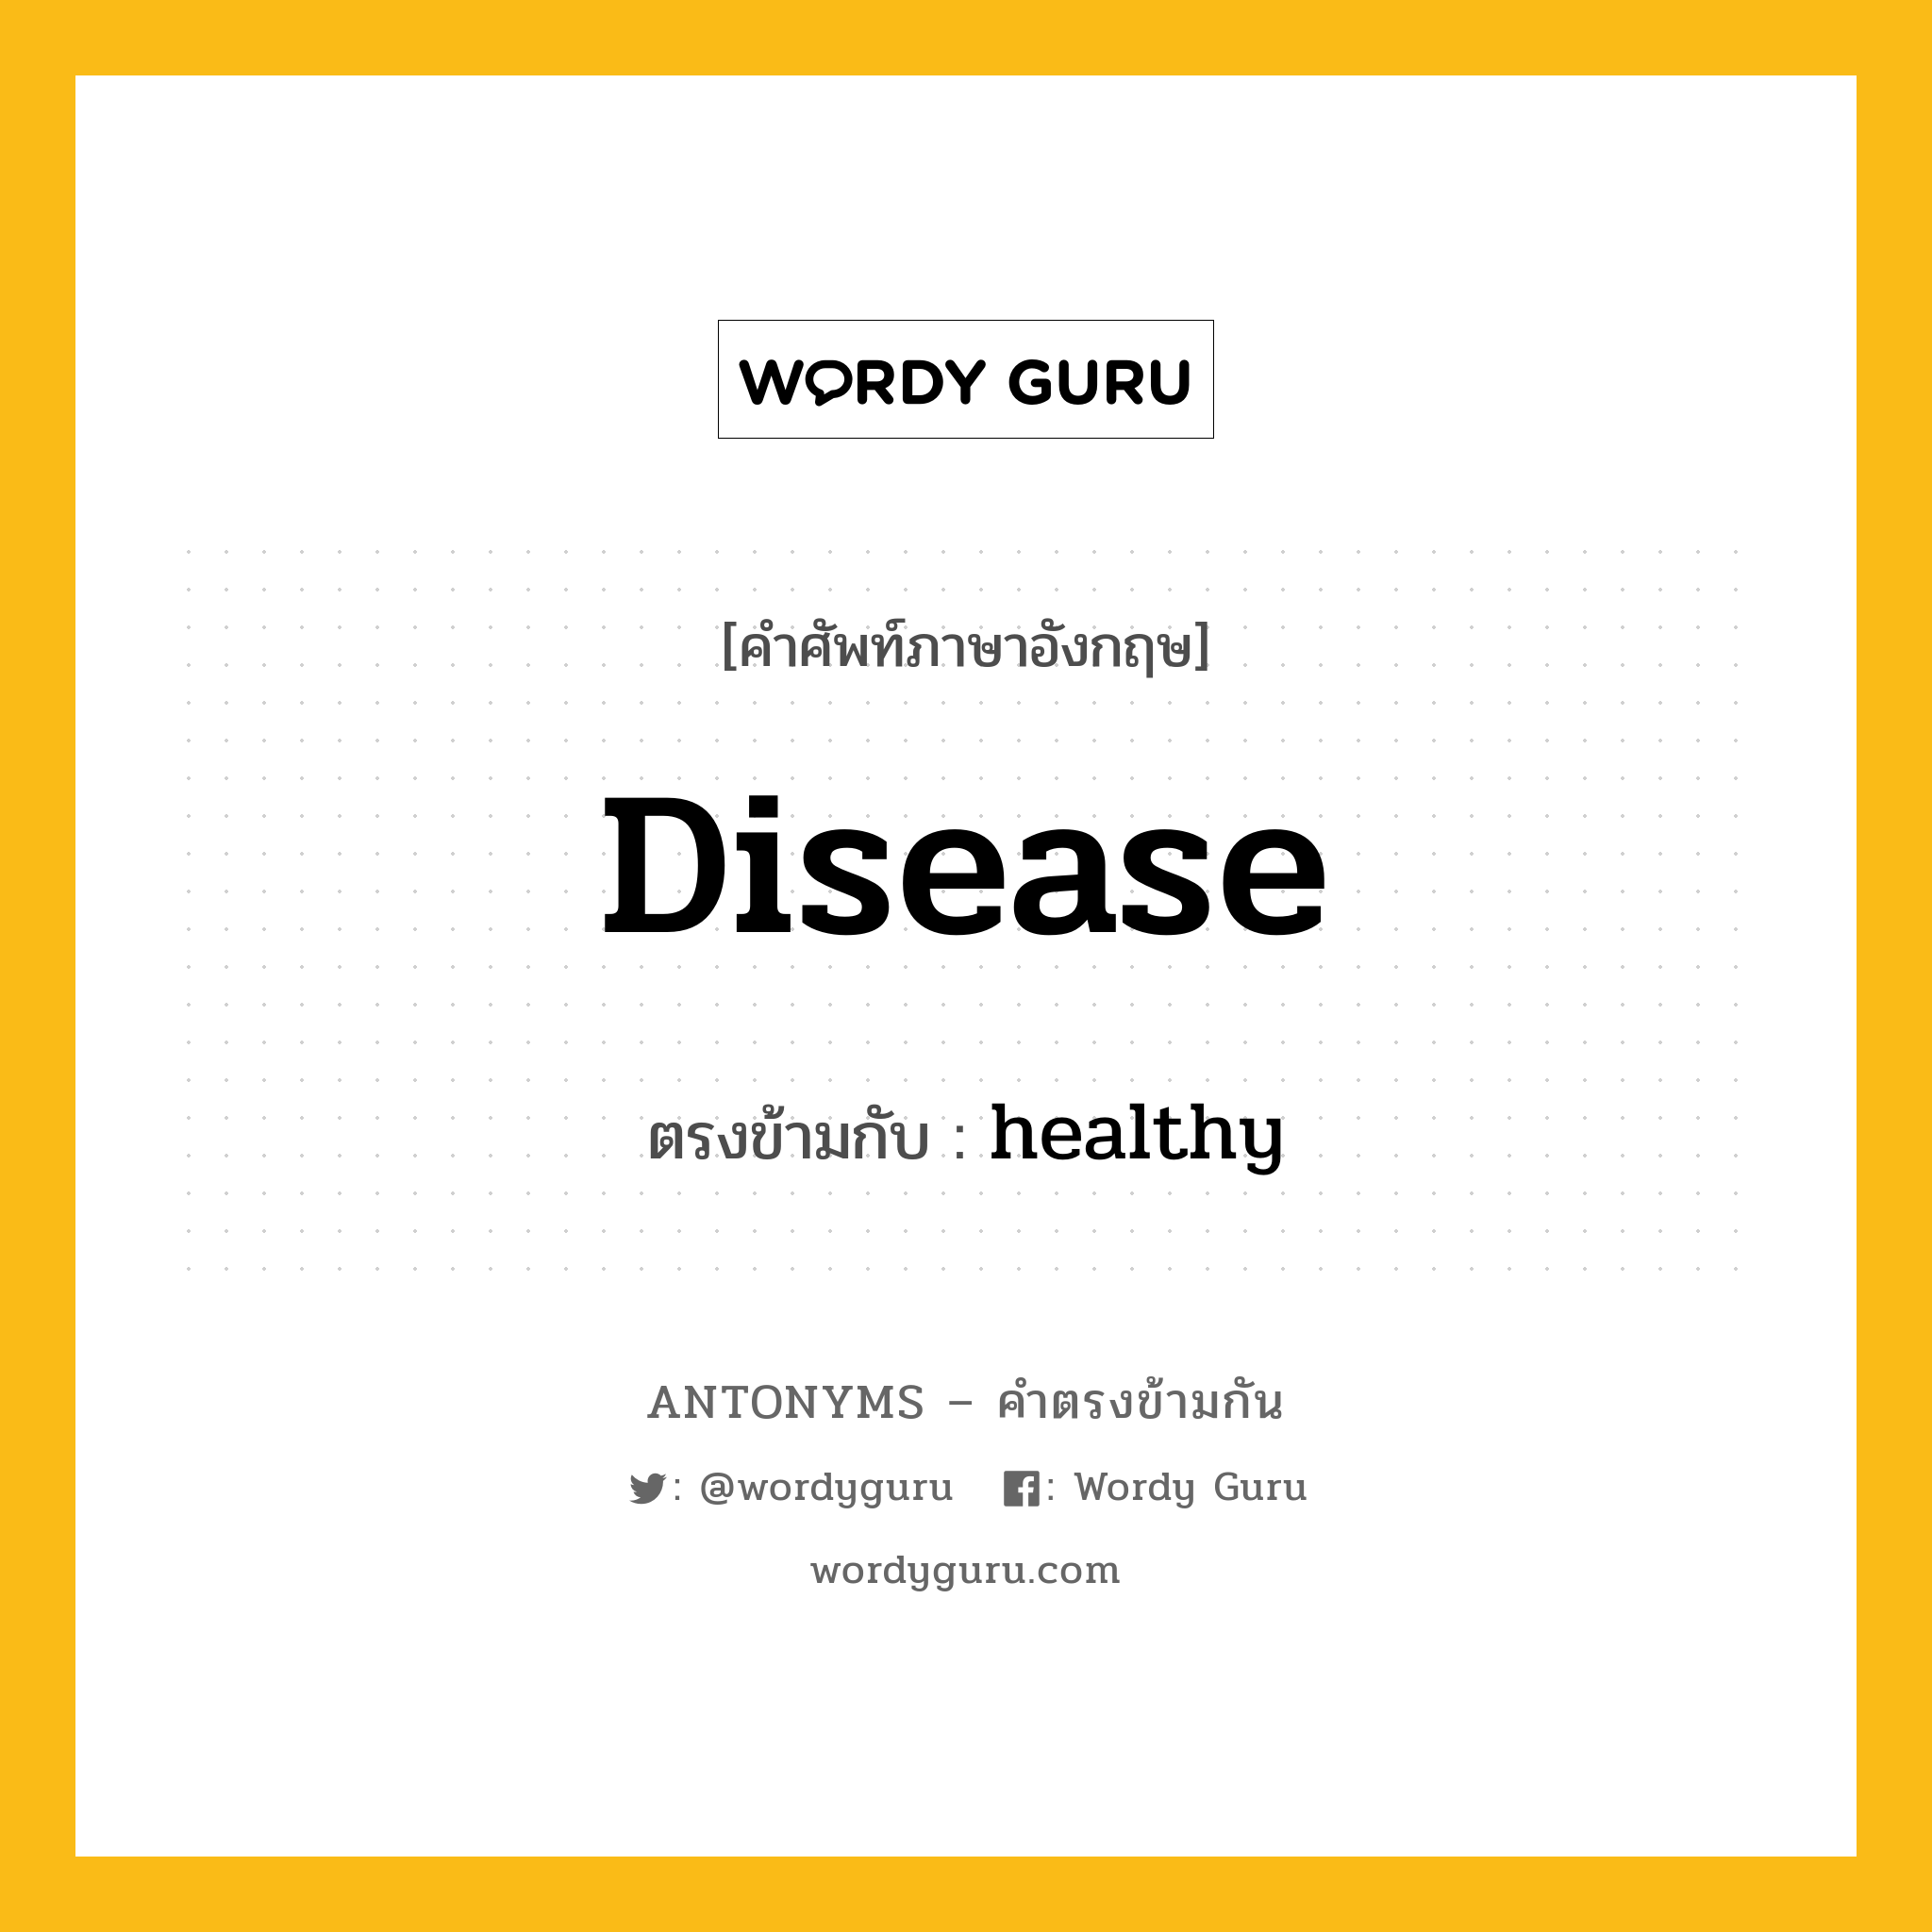 disease เป็นคำตรงข้ามกับคำไหนบ้าง?, คำศัพท์ภาษาอังกฤษ disease ตรงข้ามกับ healthy หมวด healthy